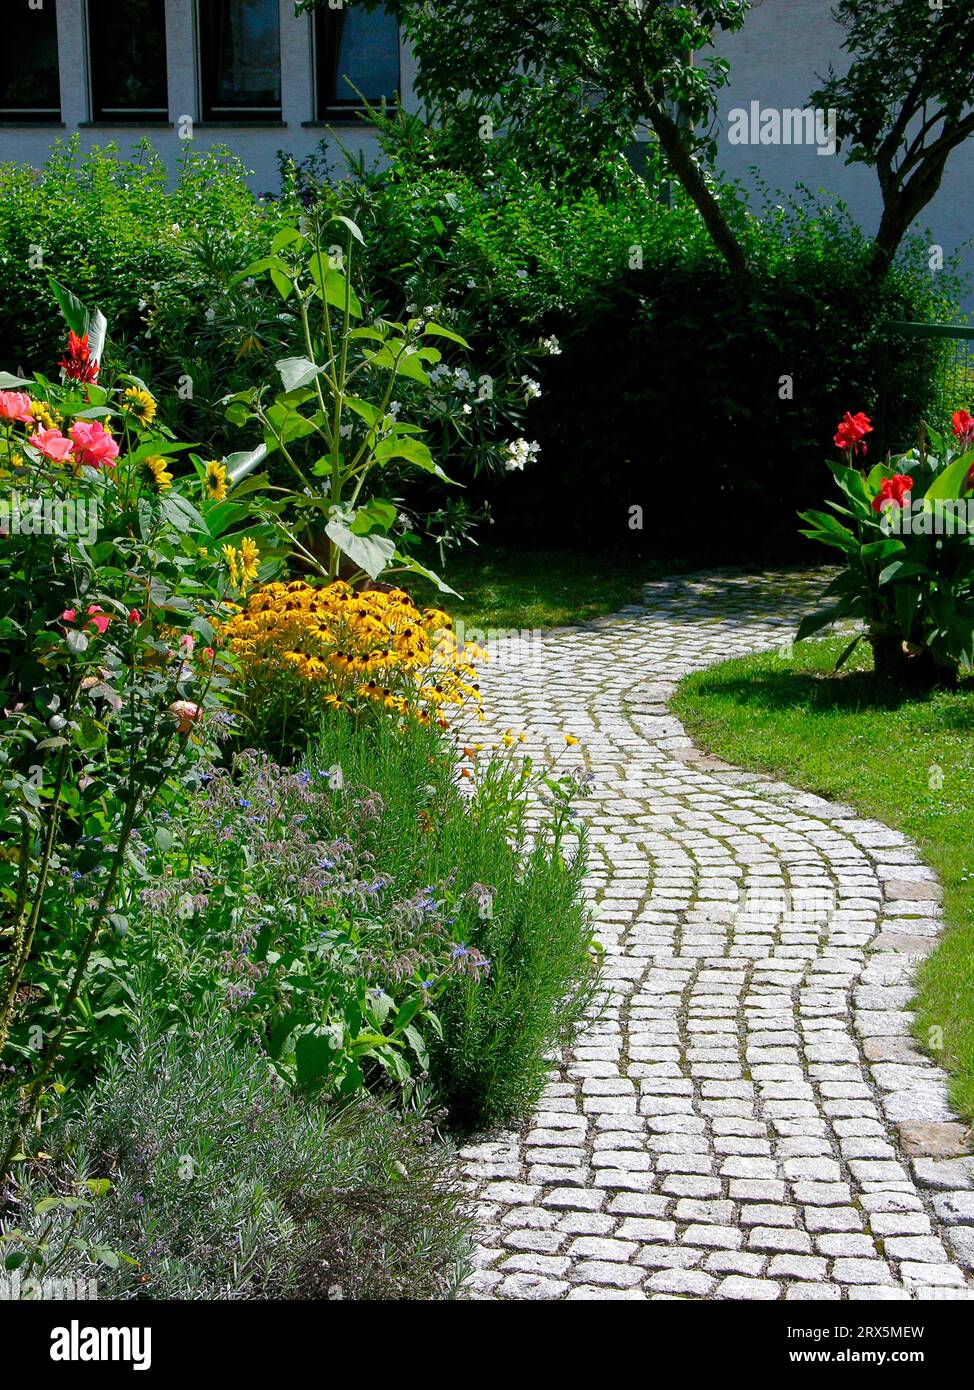 Jardin vivace avec chemin pavé, pierres, jardin d'été, jardin fleuri Banque D'Images